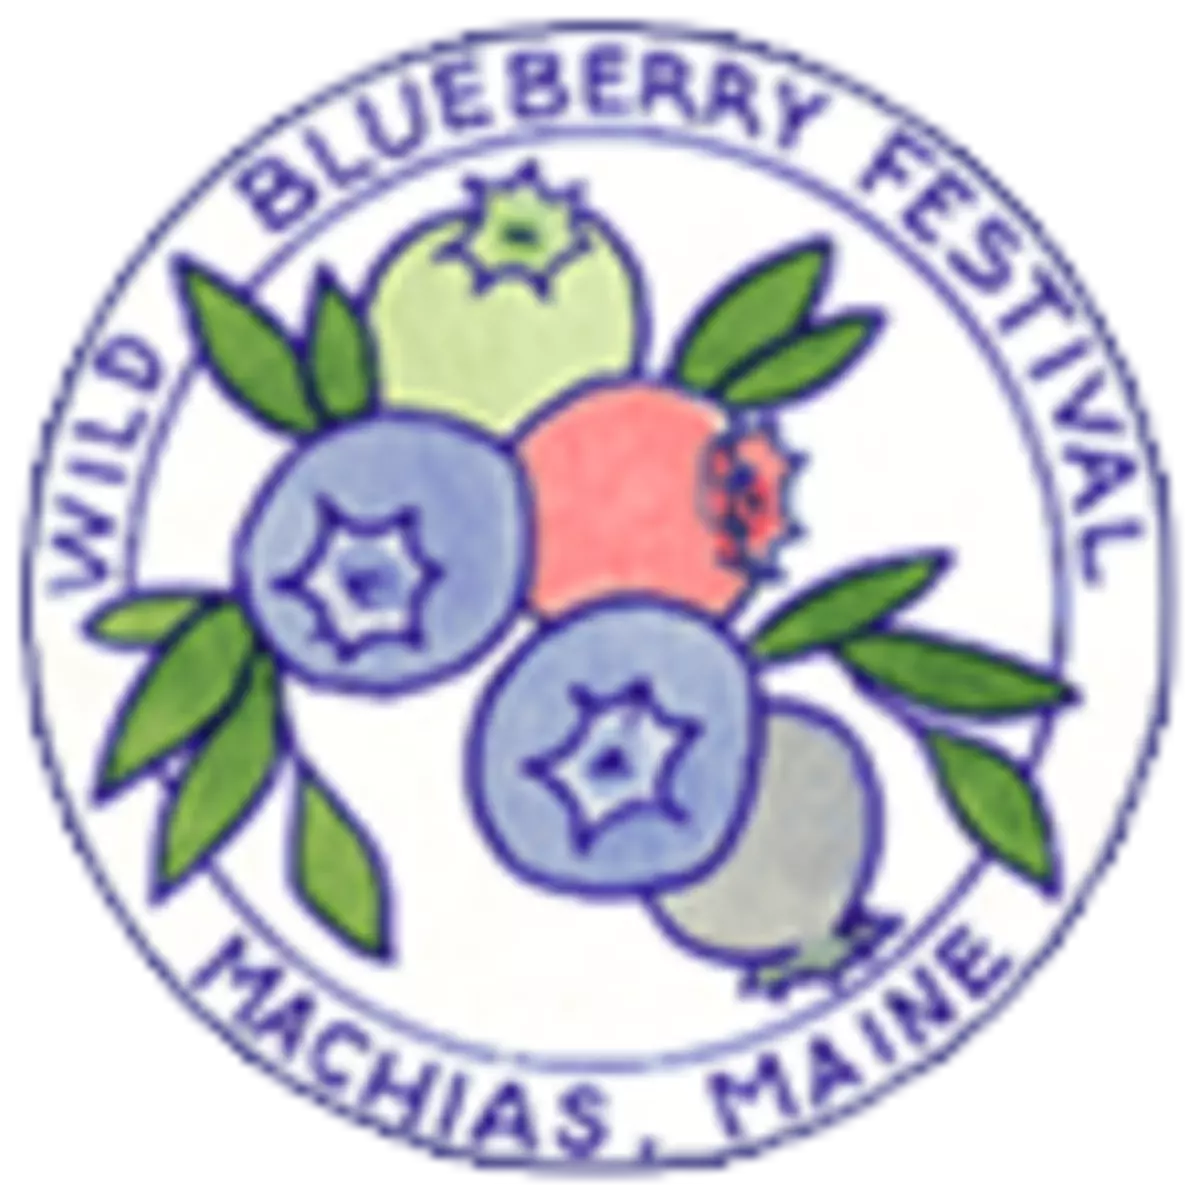 Wild Blueberry Run August 20 in Machias